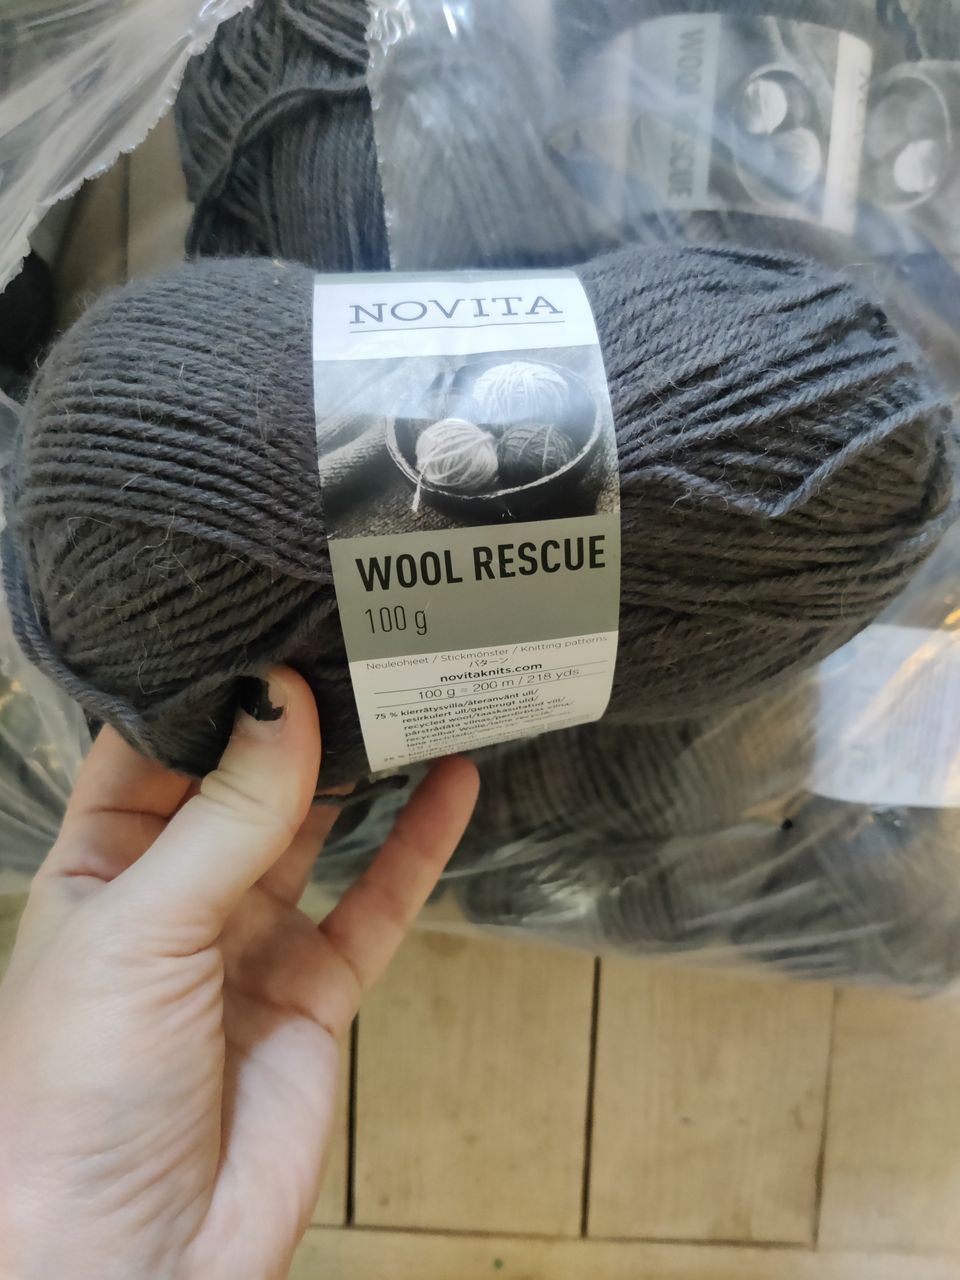 Novita wool rescue sukkalankaa